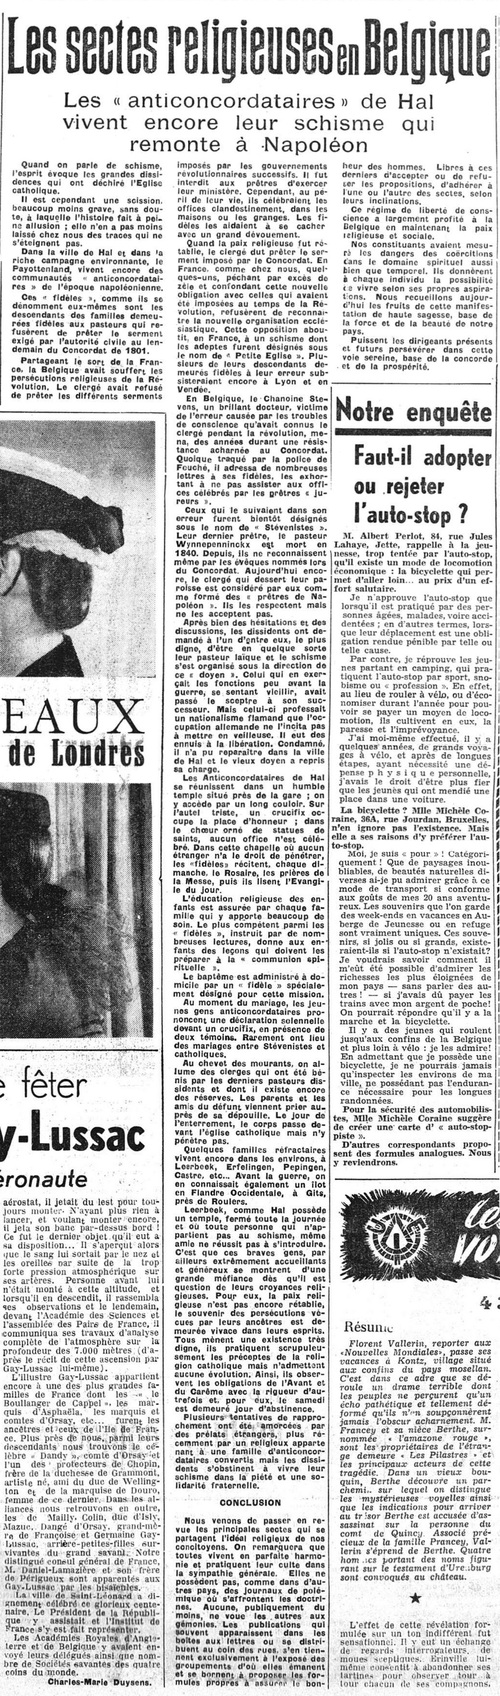 Les sectes religieuses en Belgique : Les « anticondordataires » de Hal (La Lanterne, 17 mai 1950)(Belgicapress)